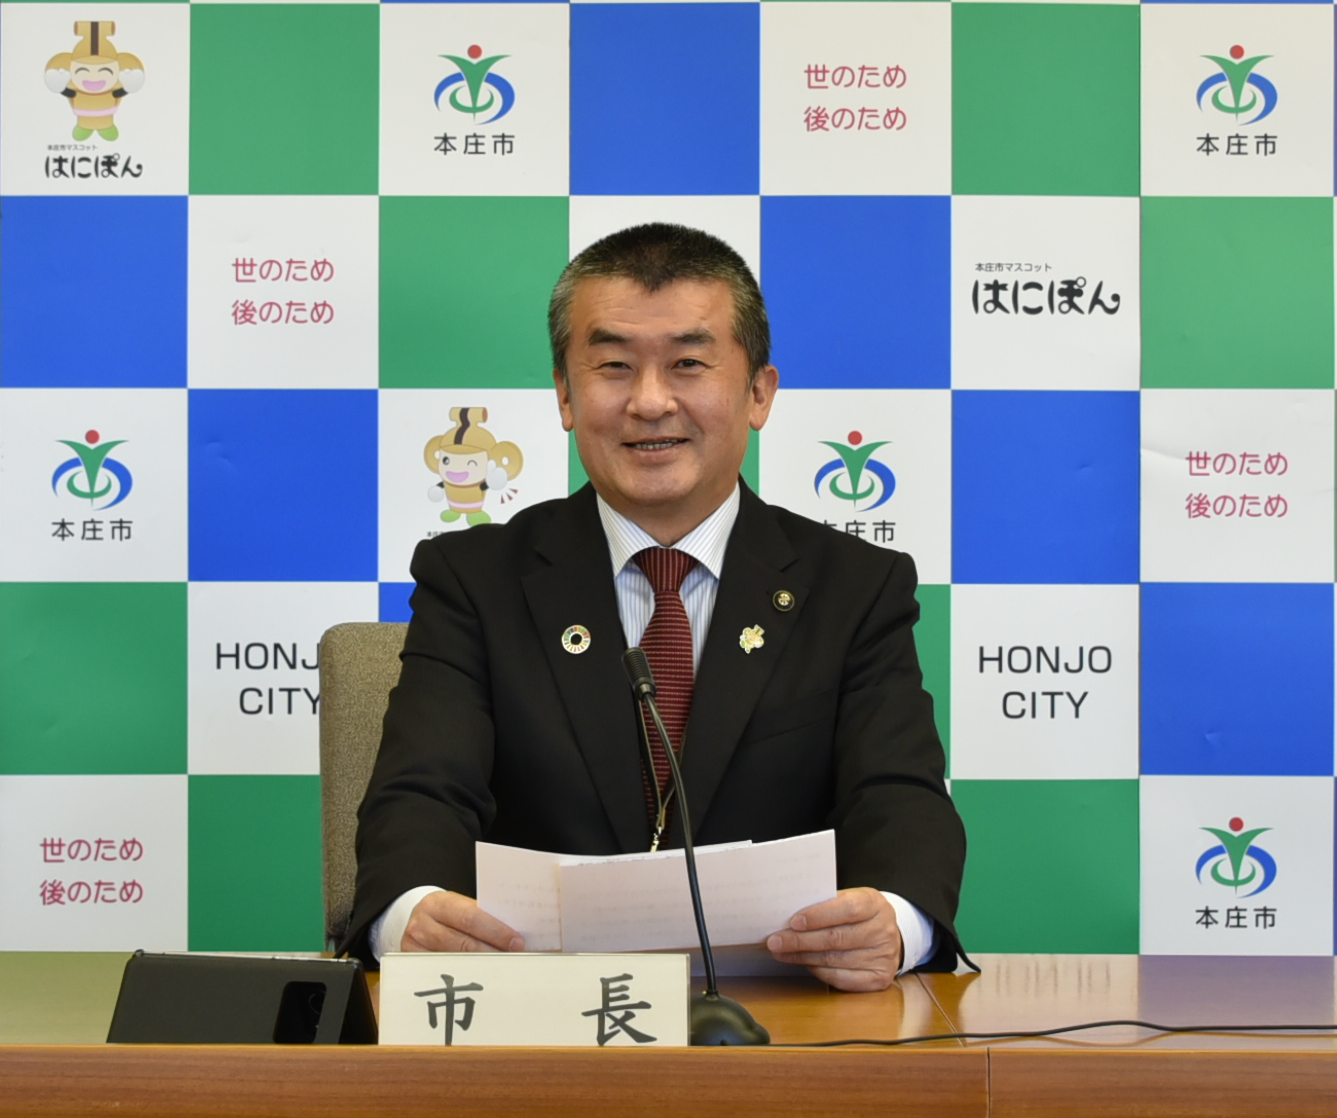 市長就任訓示を述べている吉田市長の写真